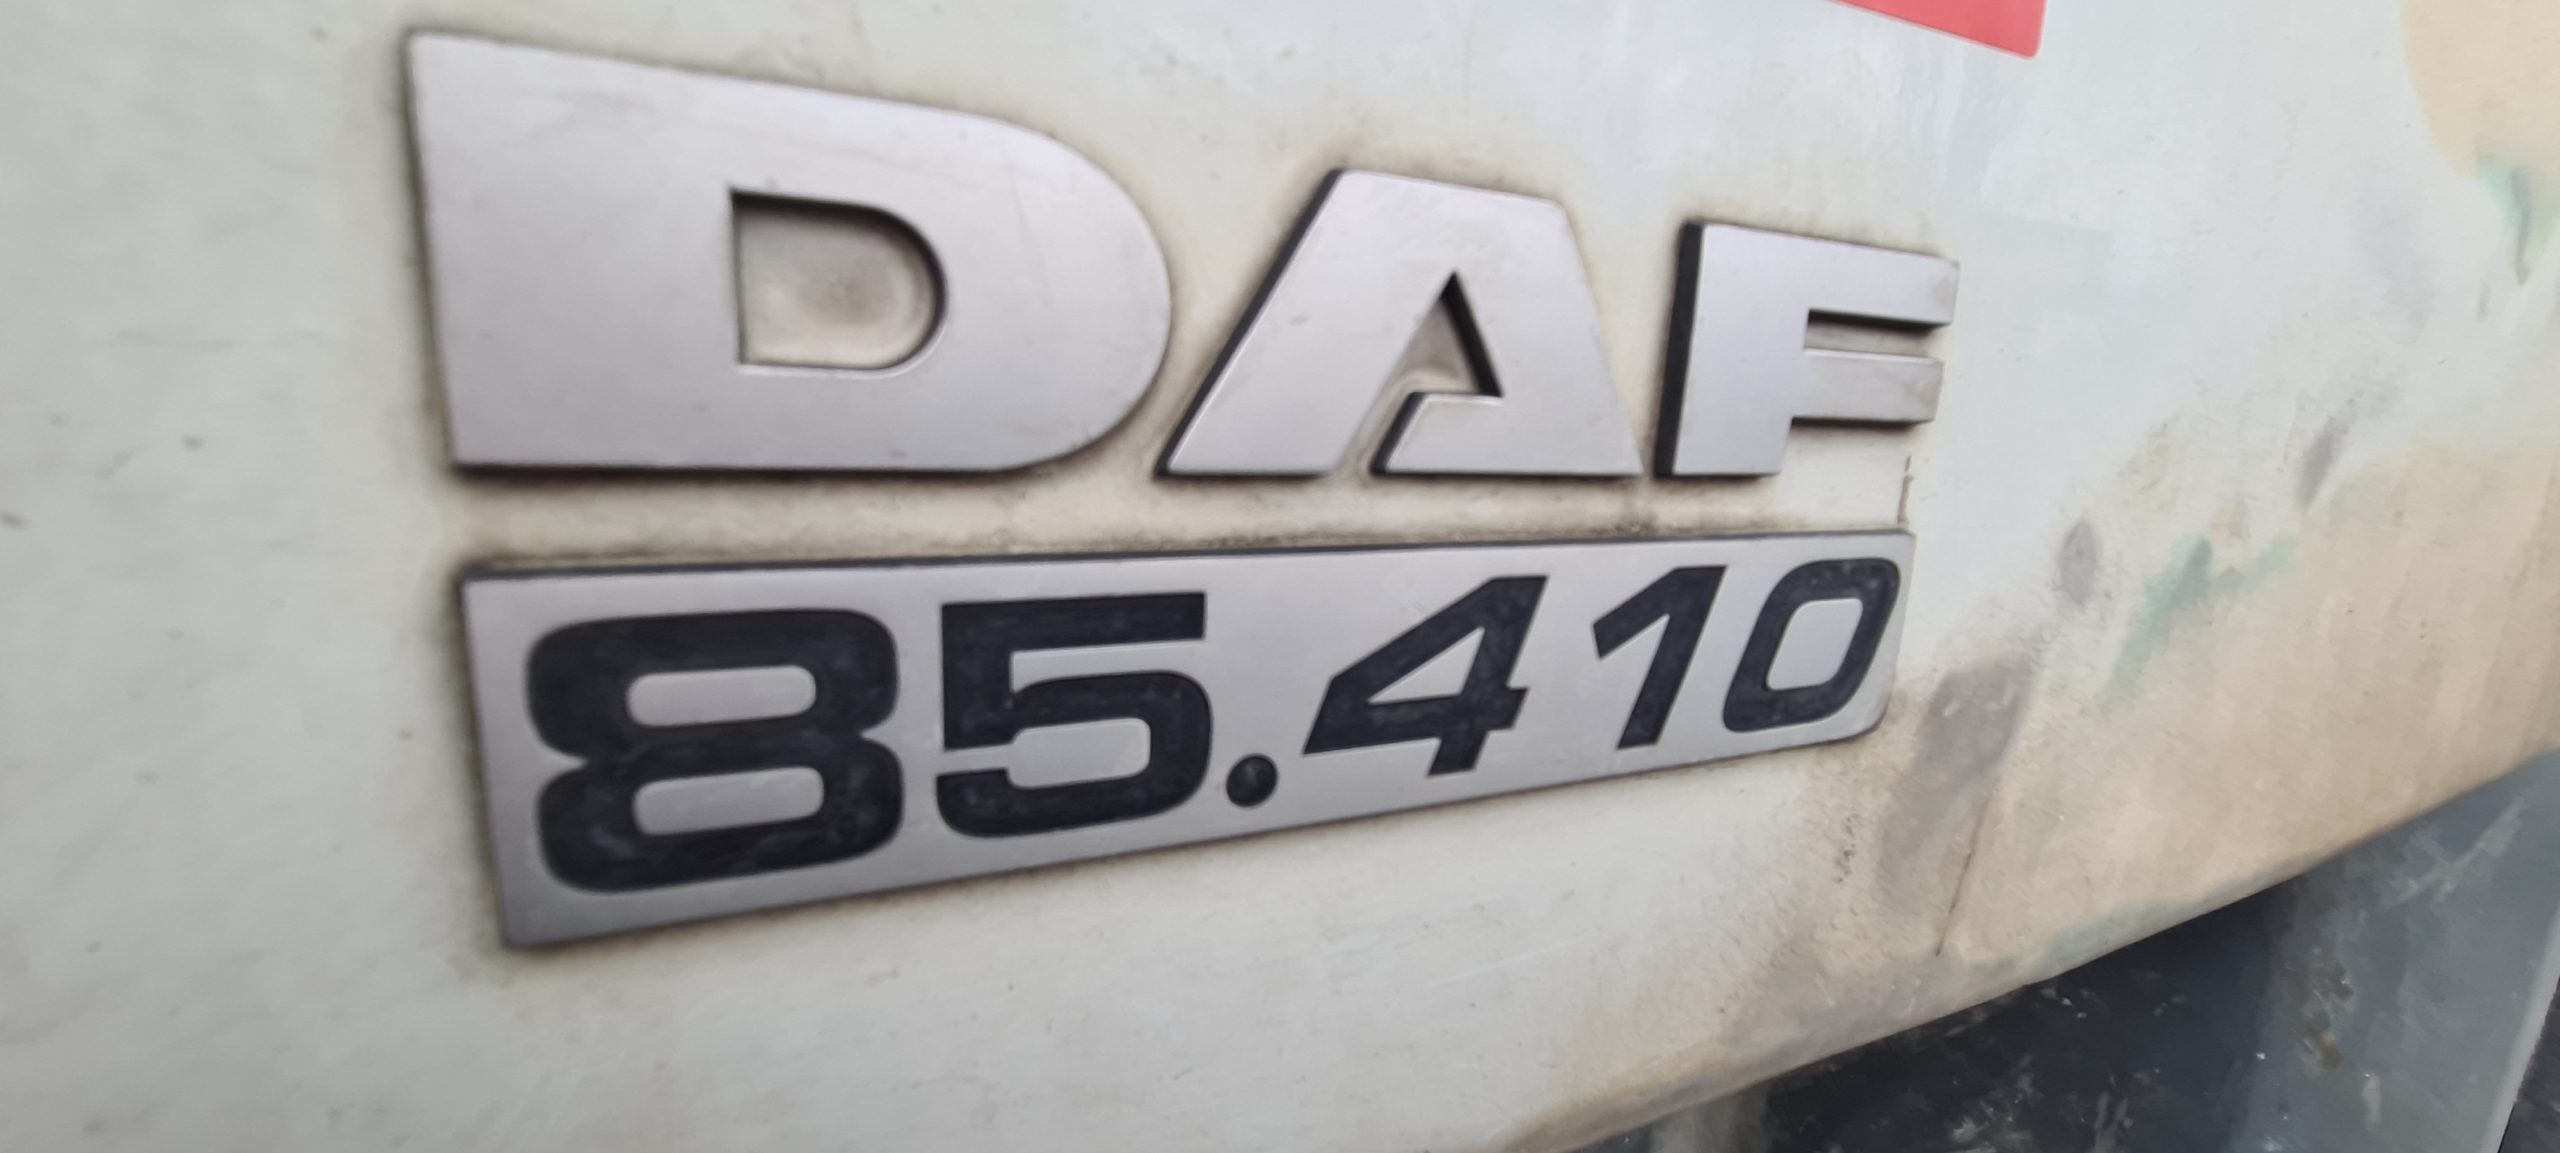 Problème Adblue sur Daf 85 410 Perte puissance Défaut Euro 5